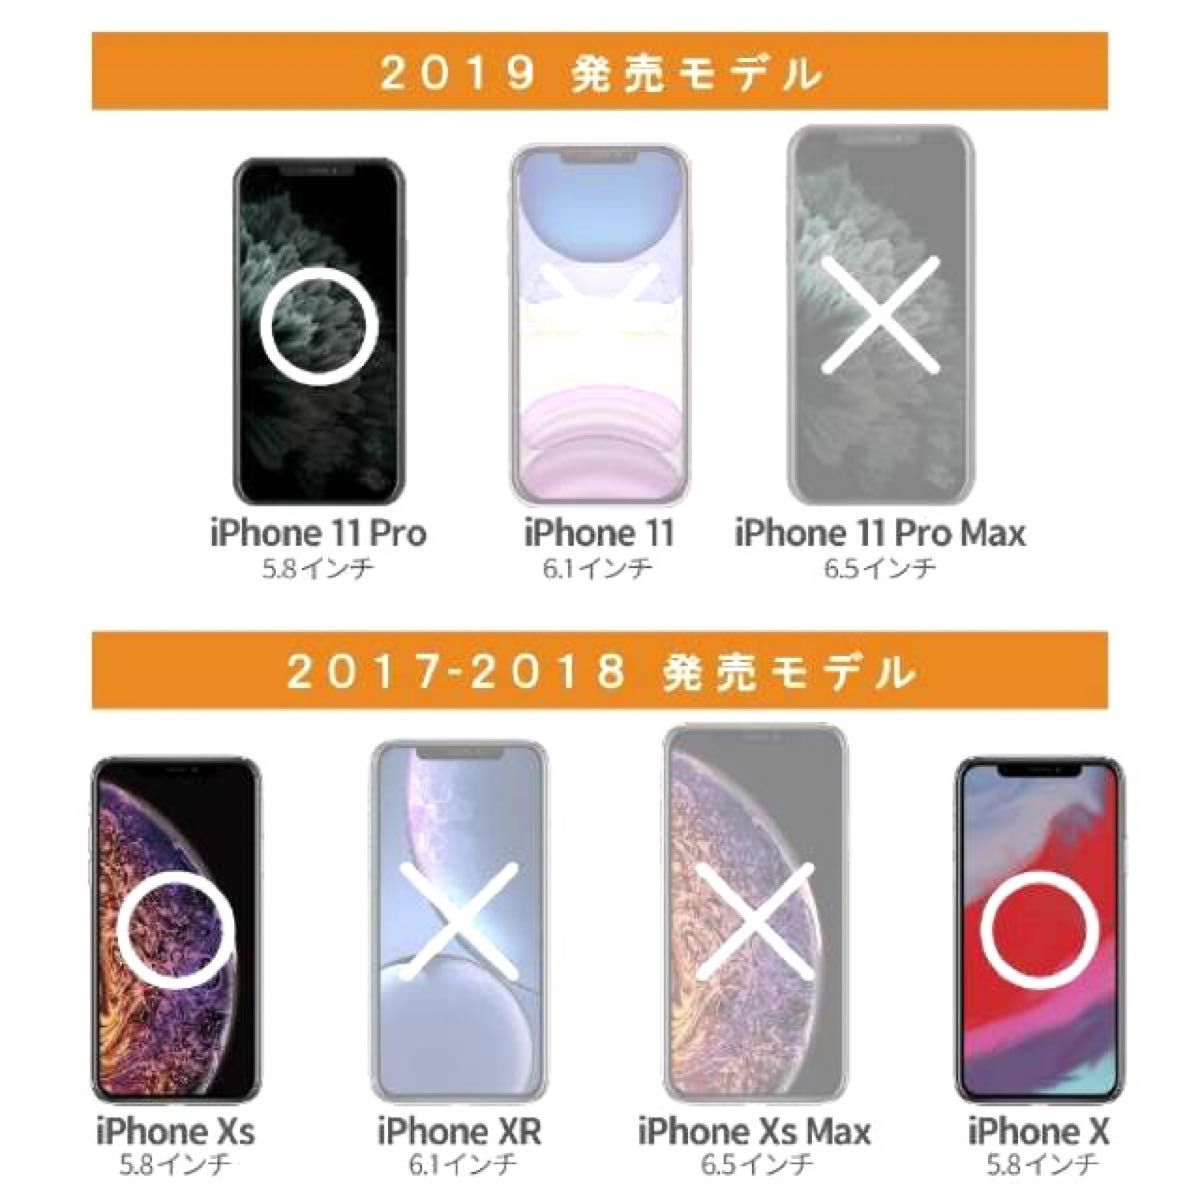 【新品】エレコム★iPhoneX / XS / 11 Pro★ガラスフィルム①X